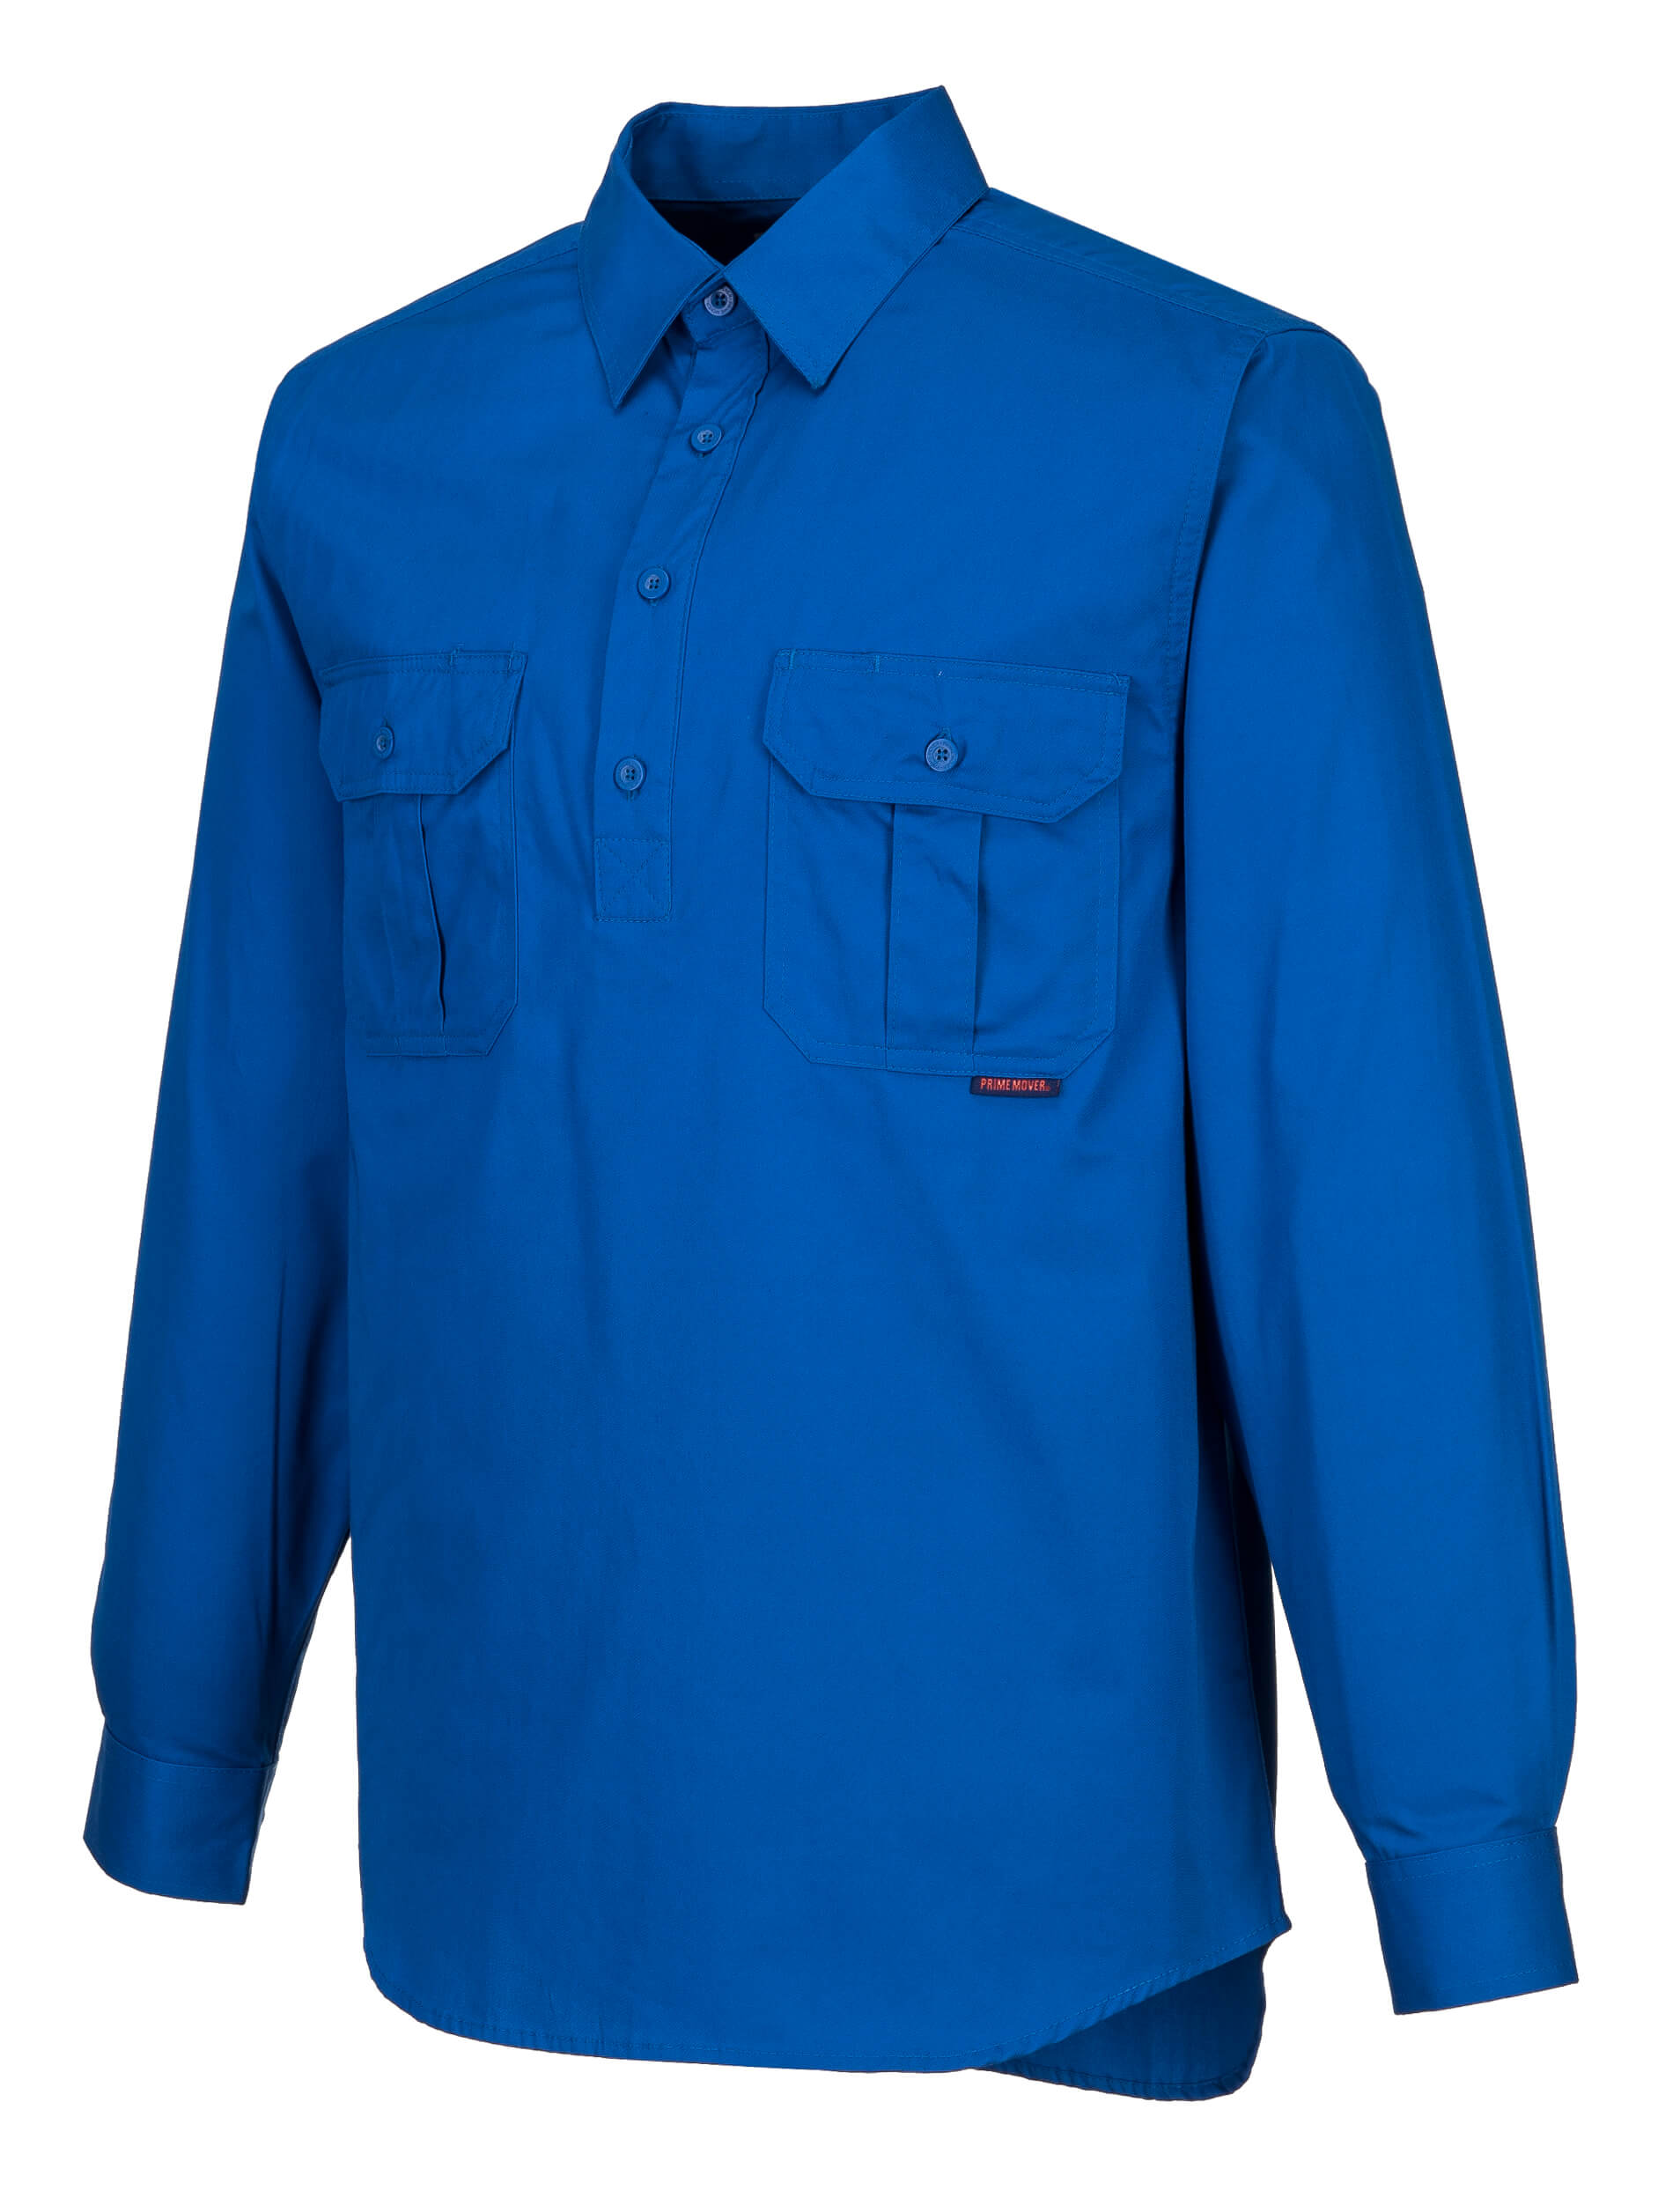 MC903 - Adelaide Shirt, Long Sleeve, Light Weight CB